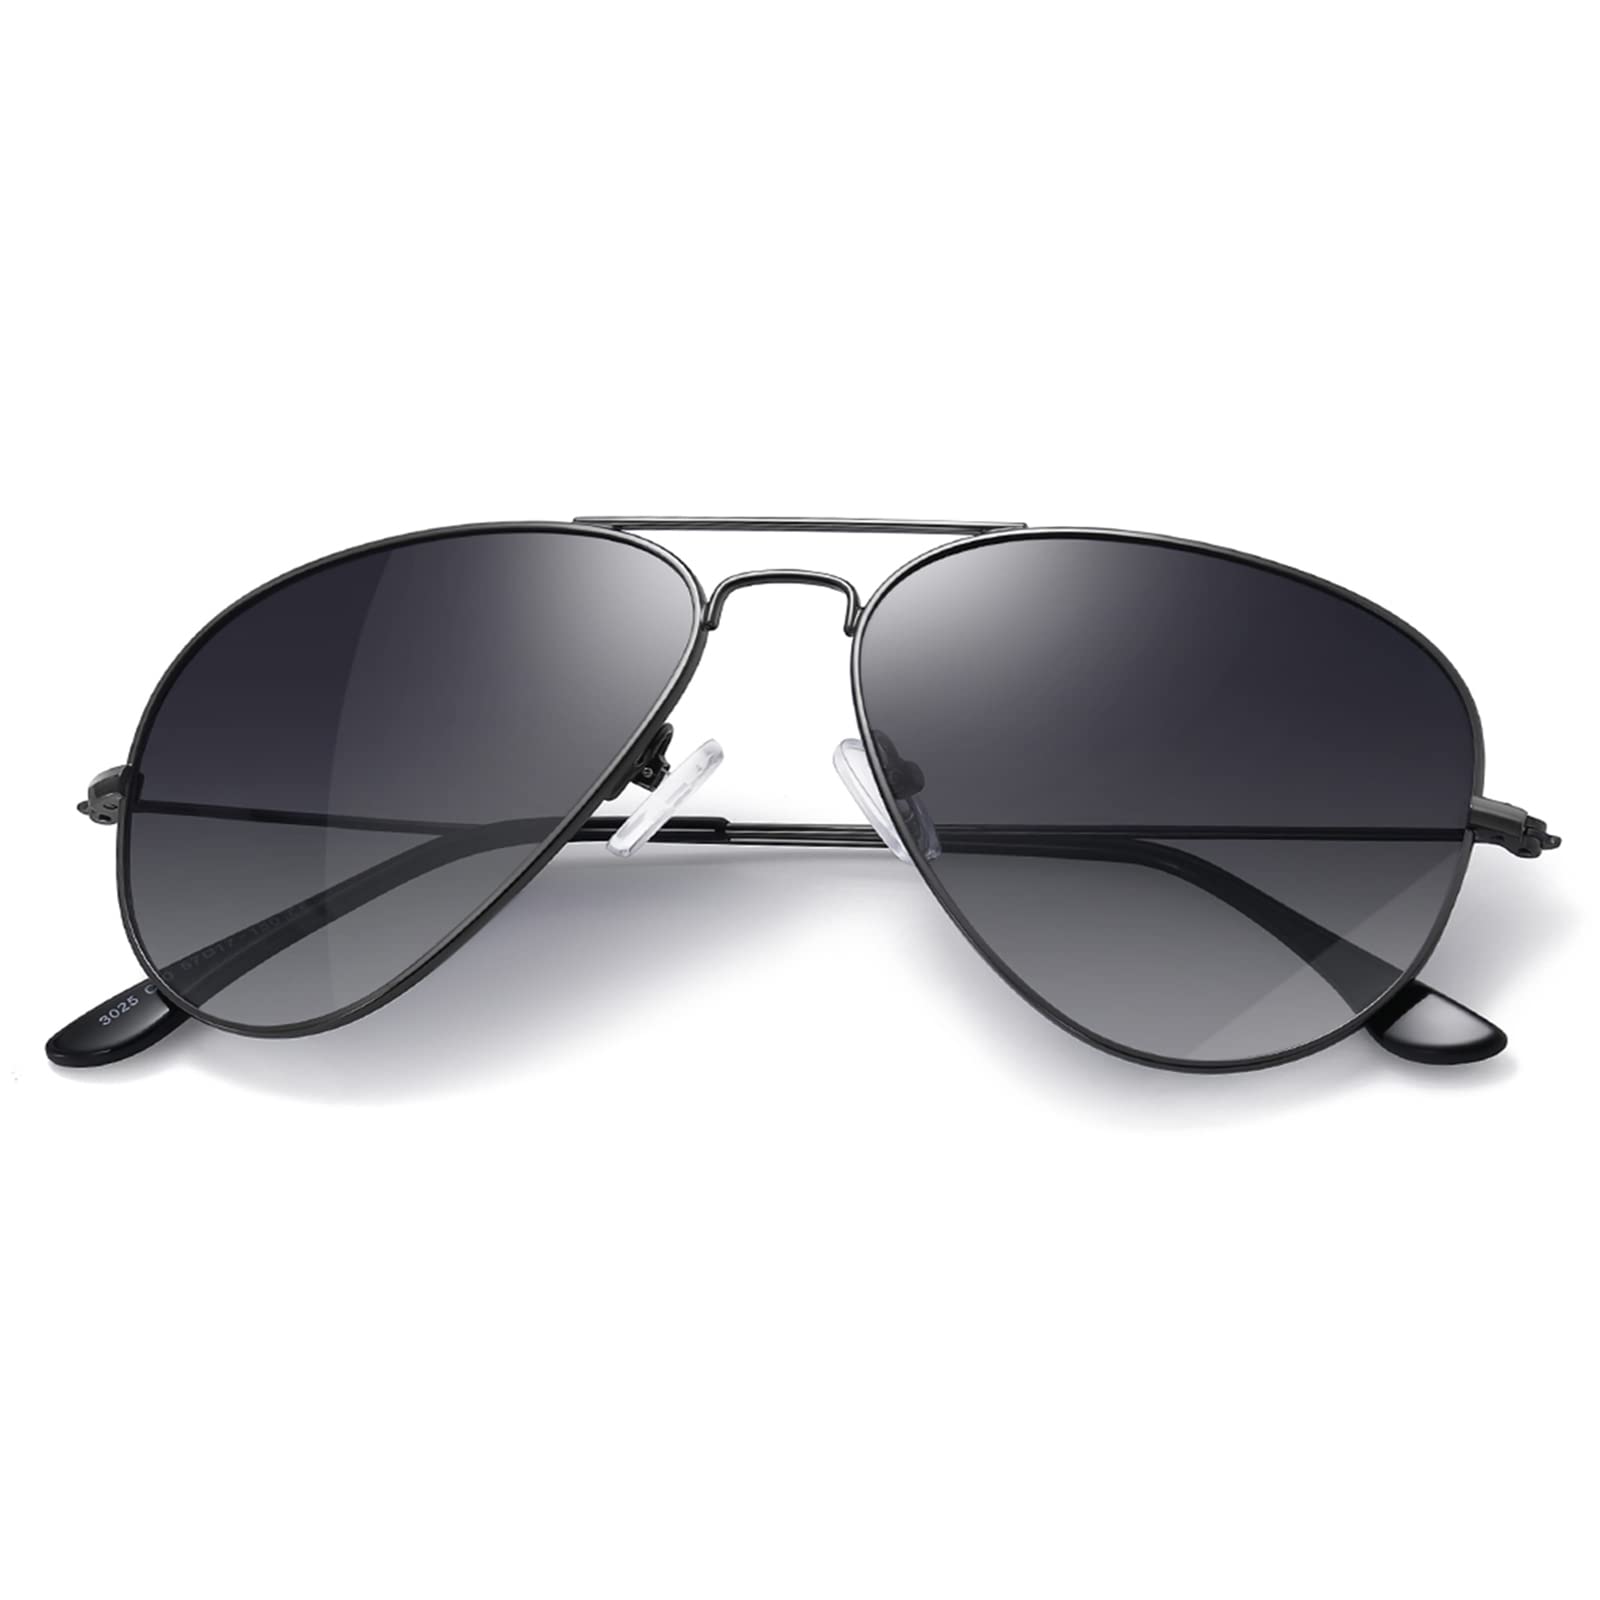 HF Classic Aviator Sunglasses for Men Womens Sunglasses Driving Polarized Sunglasses UV 400 Lens Protection